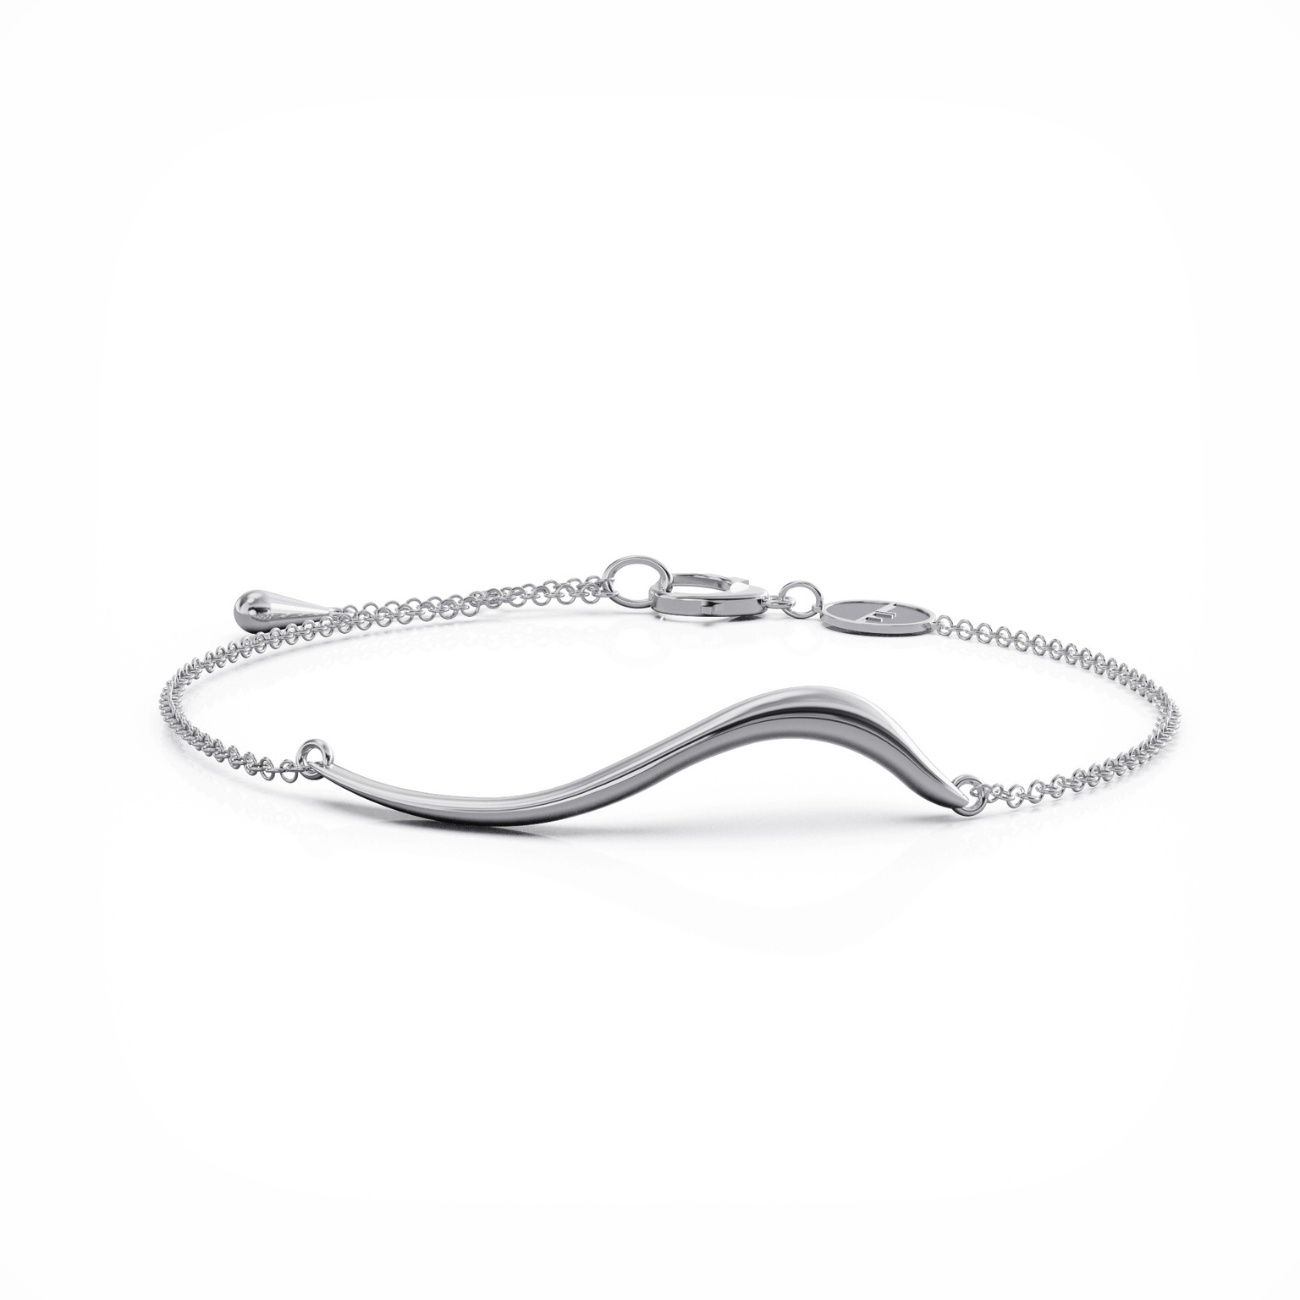 Swirl bracelet silver